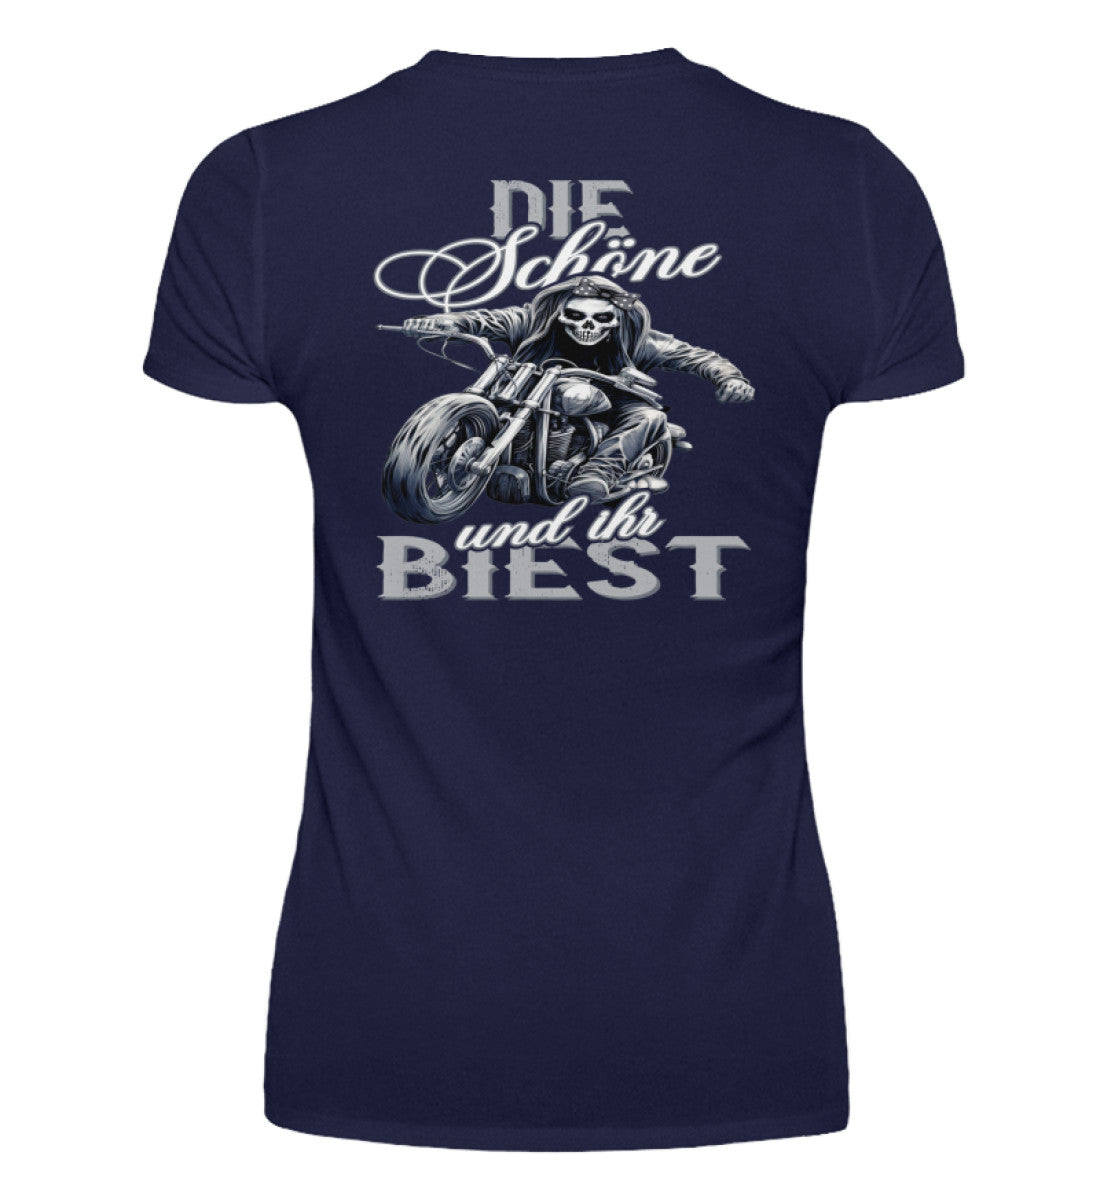 Ein Bikerin T-Shirt mit V-Ausschnitt für Motorradfahrerinnen von Wingbikers mit dem Aufdruck, Die Schöne und ihr Biest - mit Back Print, in navy blau.